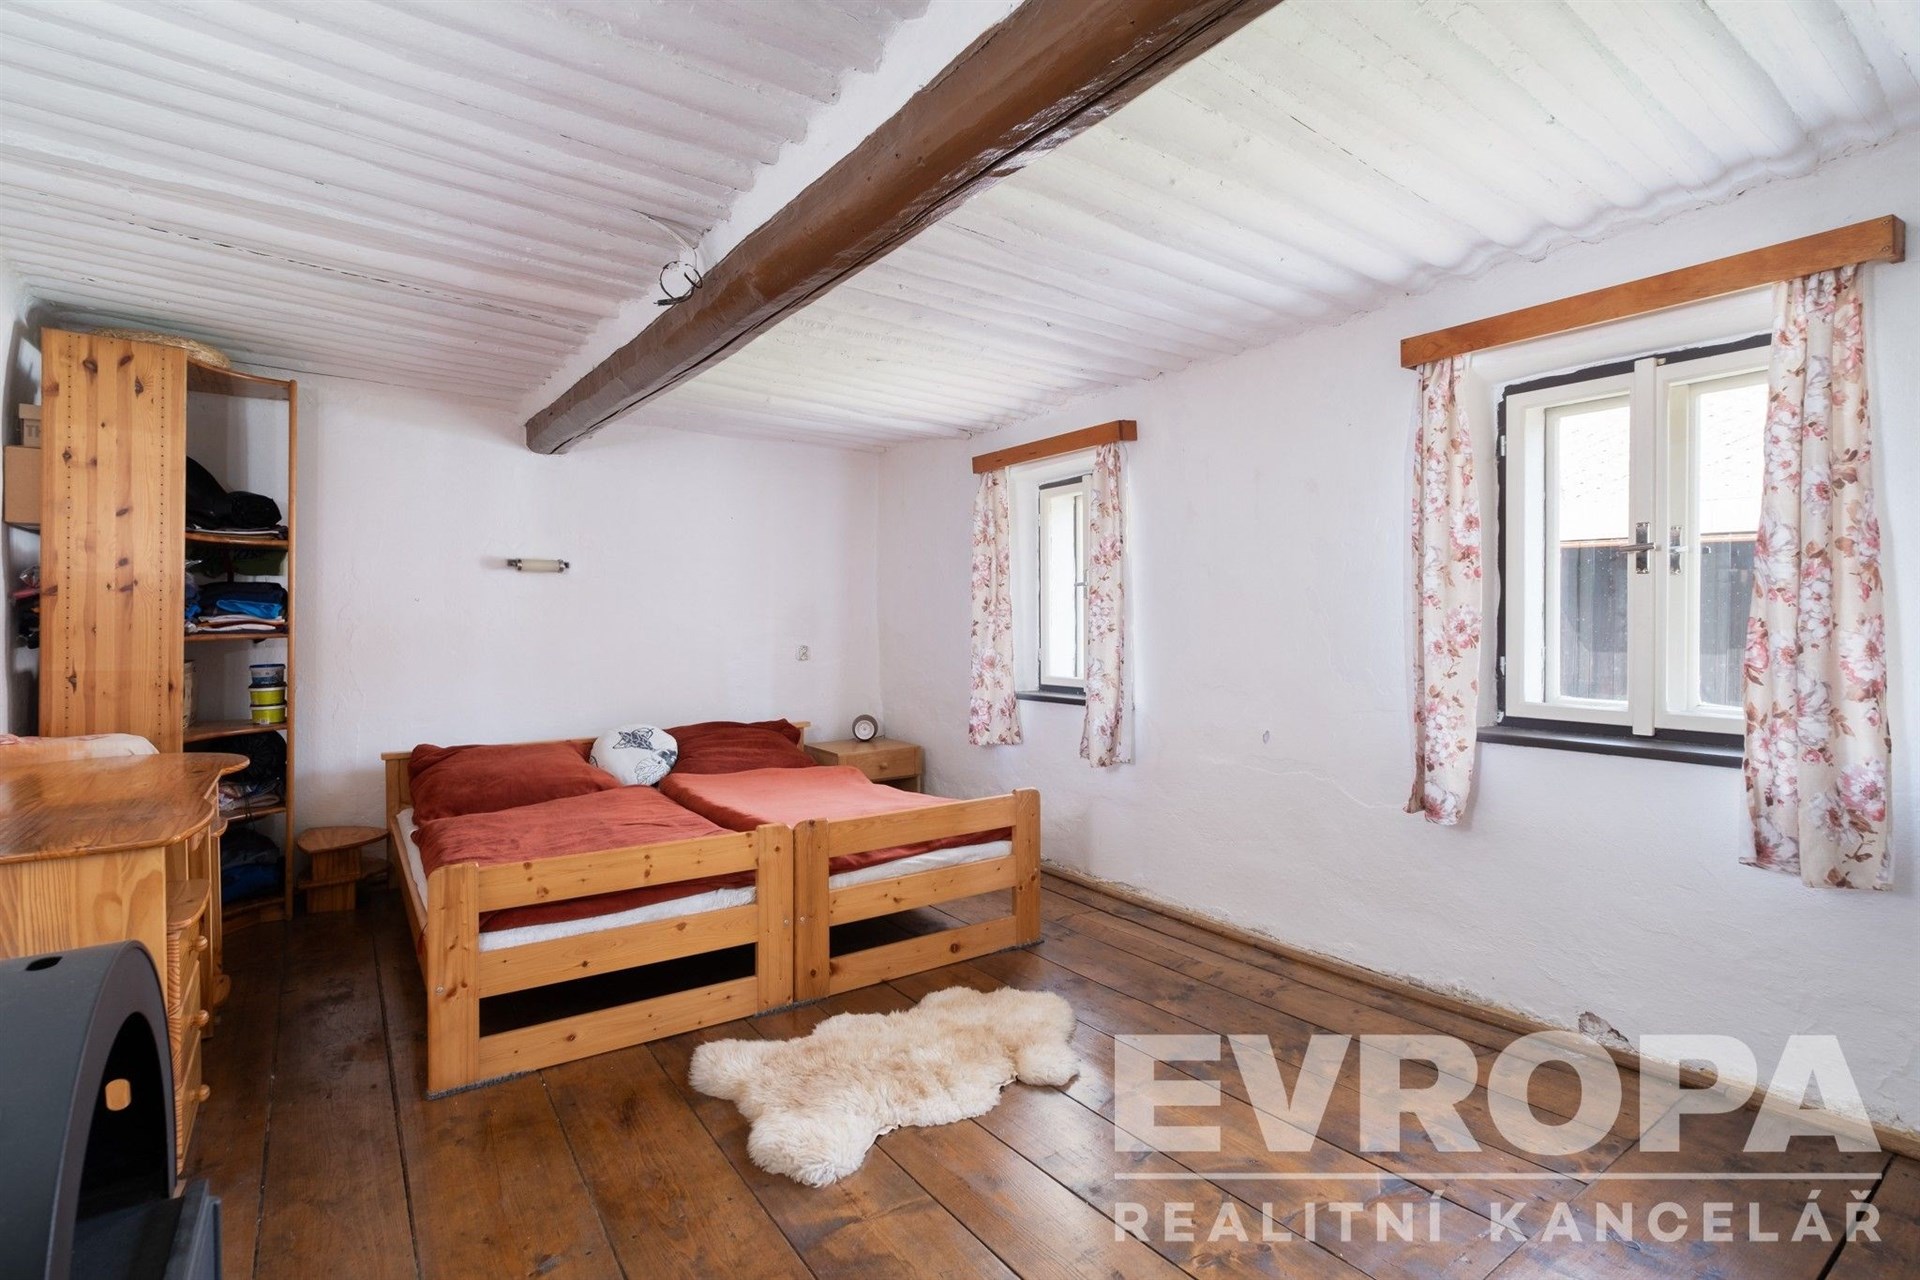 pokoj / ložnice s trámový strop, dřevěná podlaha, francouzské dveře, a přirozené světlo